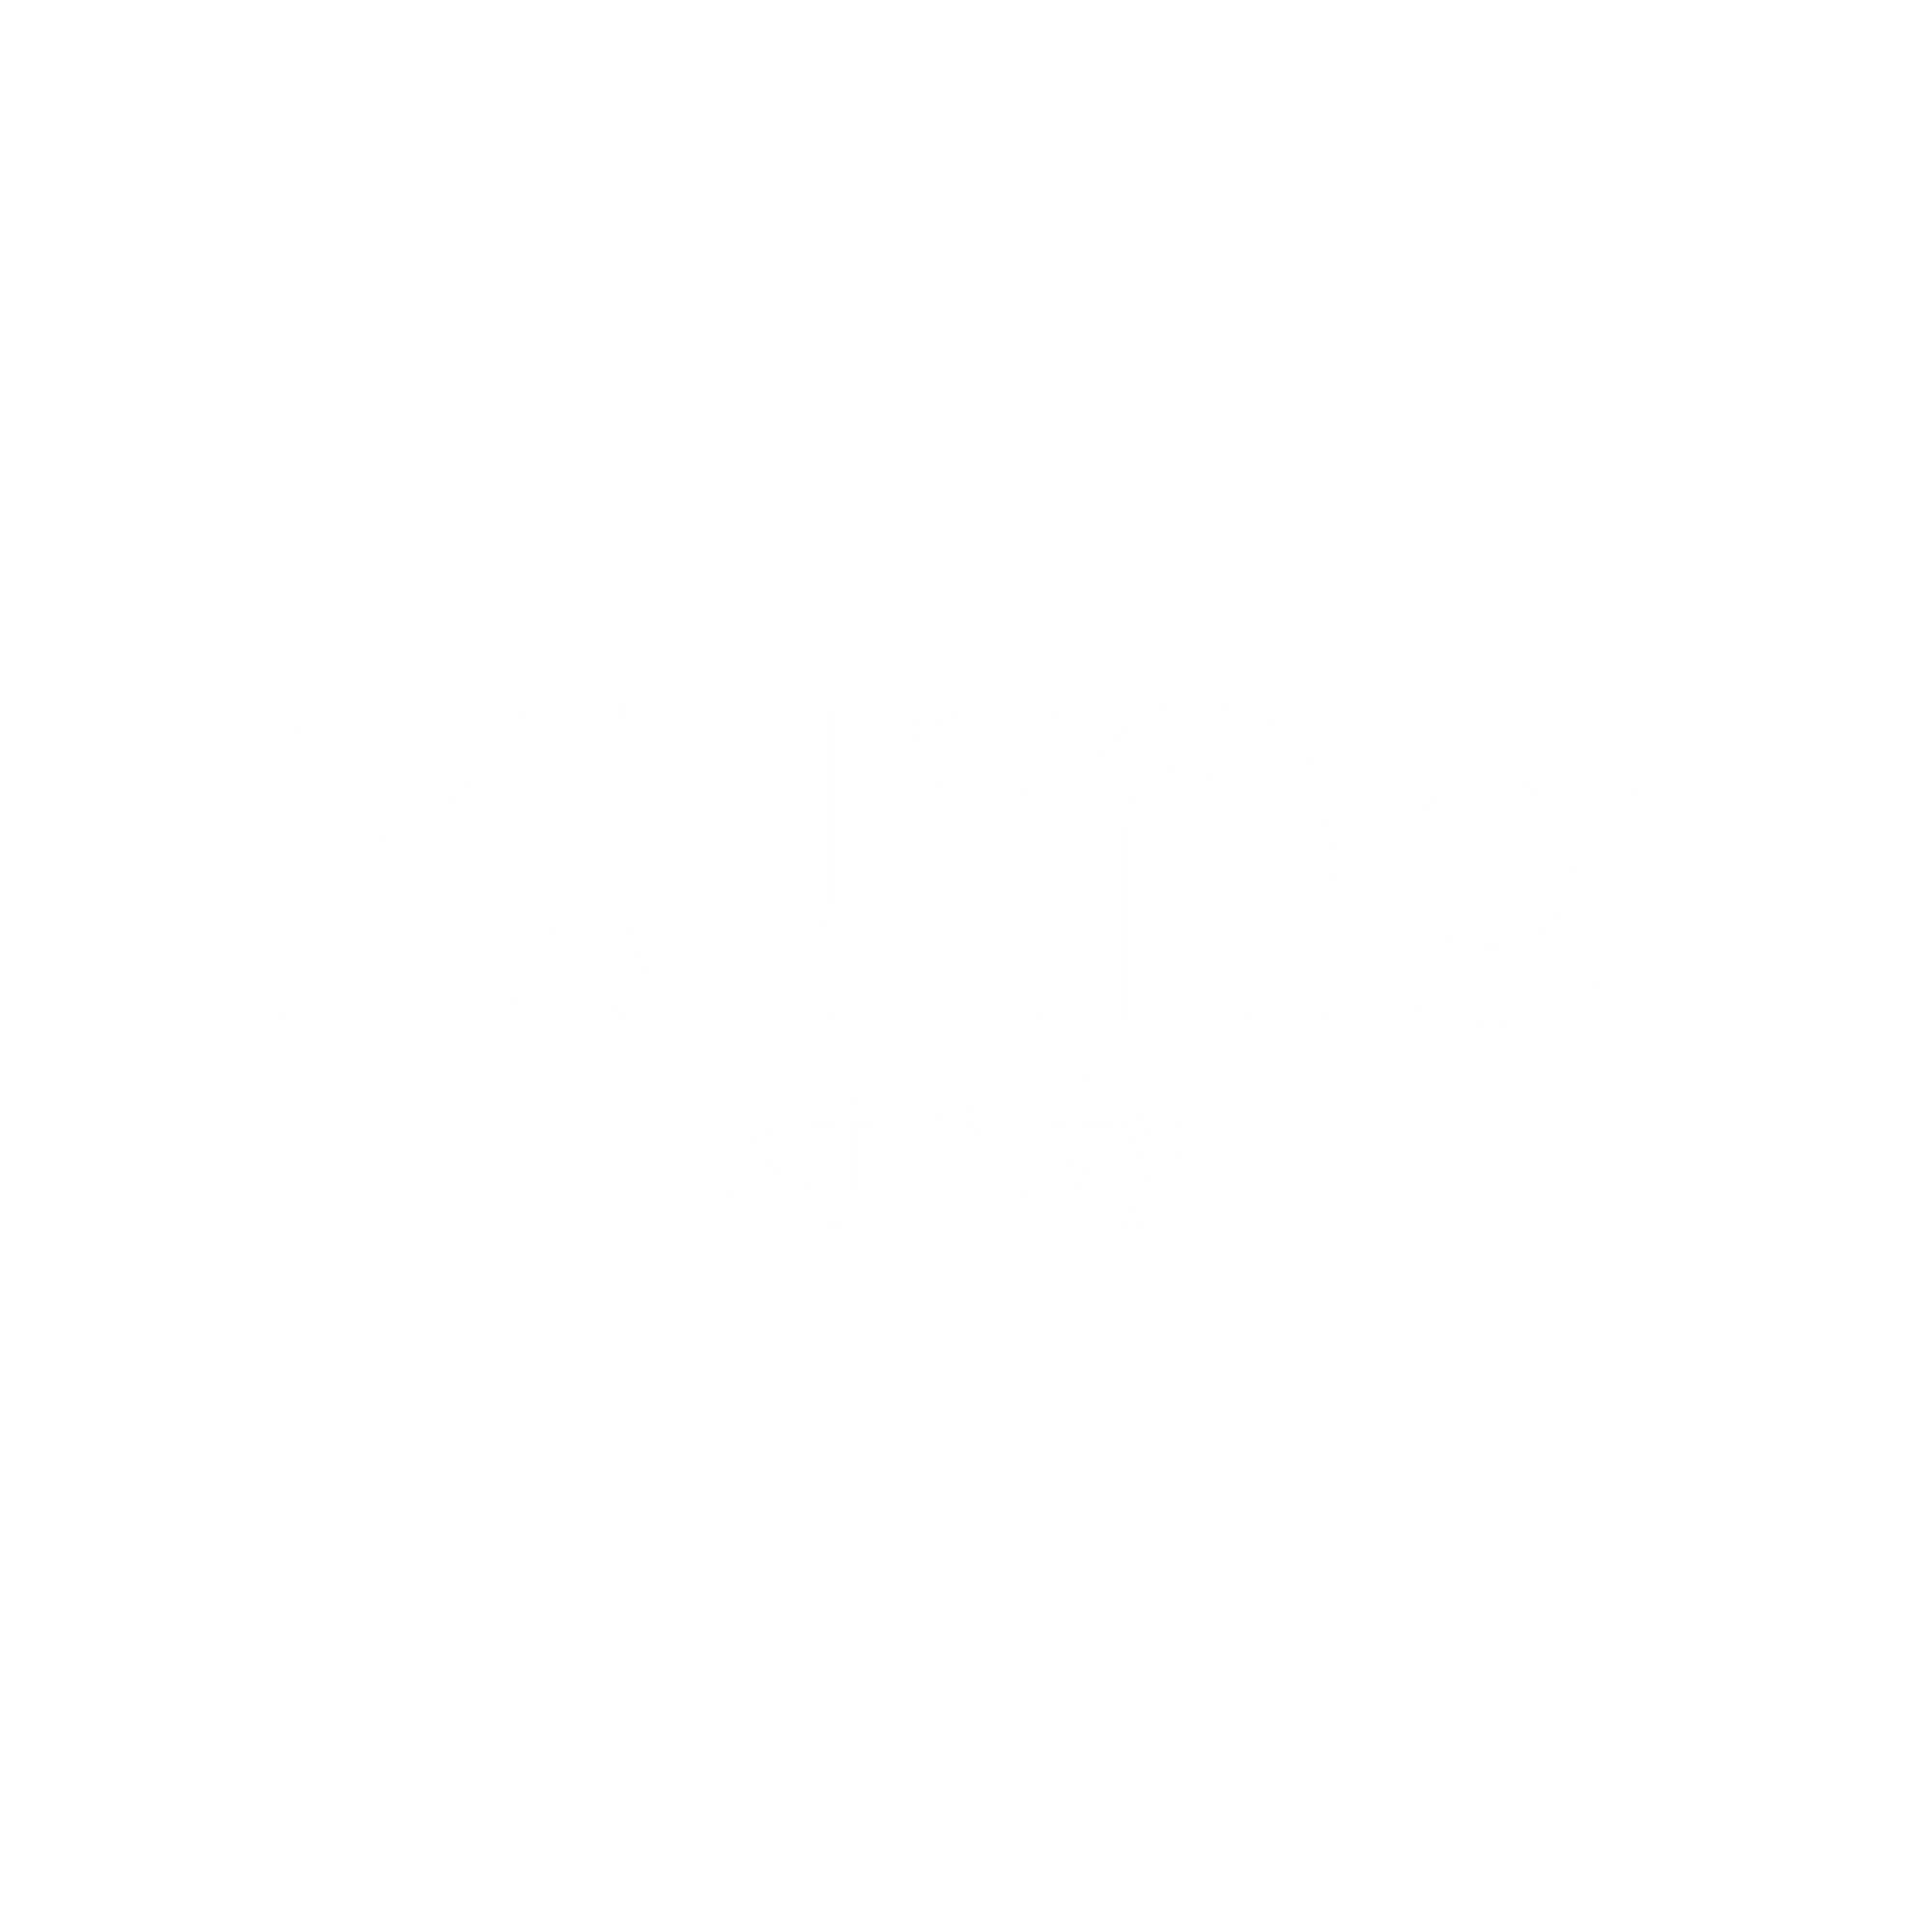 Xumo Xfinity